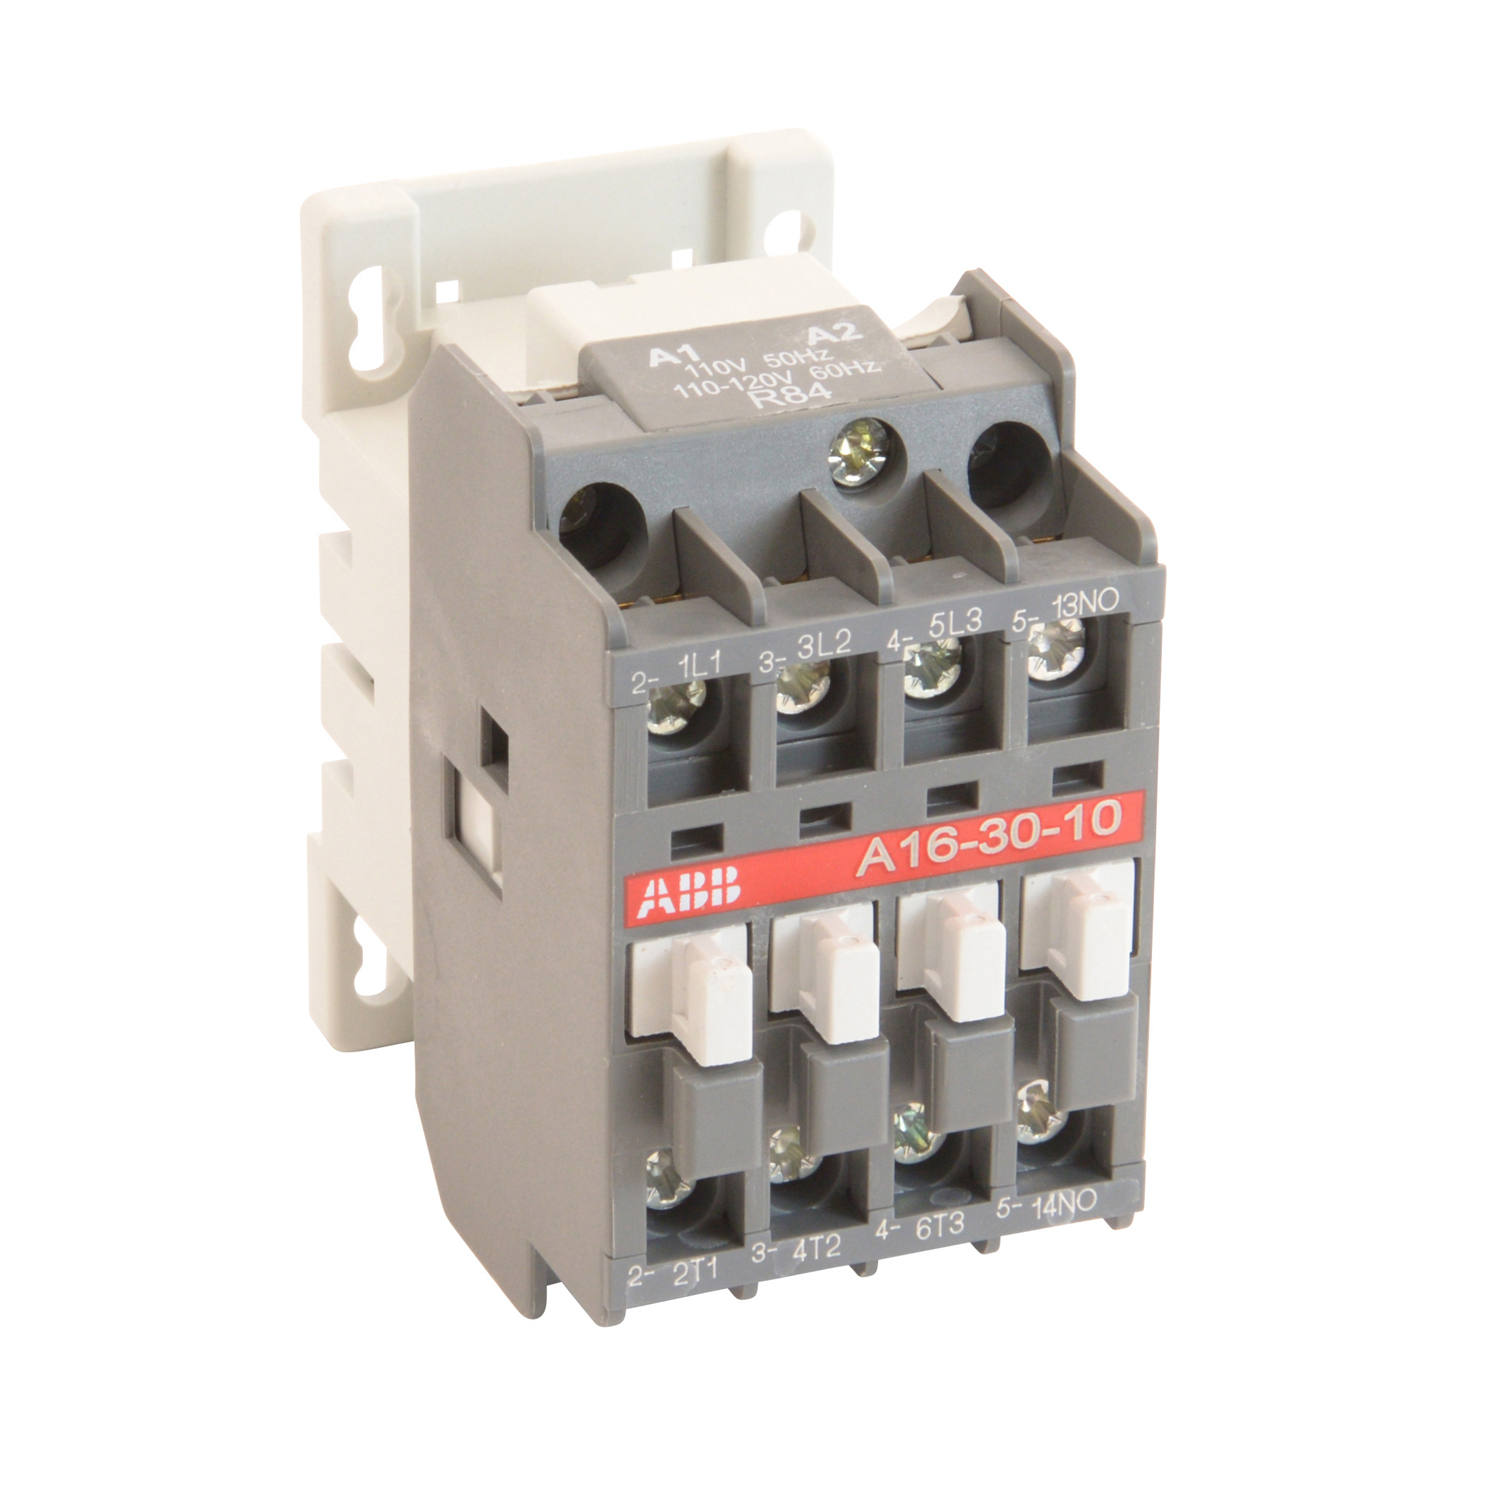 A16301084 - 16A 3P IEC Contactor 110-120V - Abb